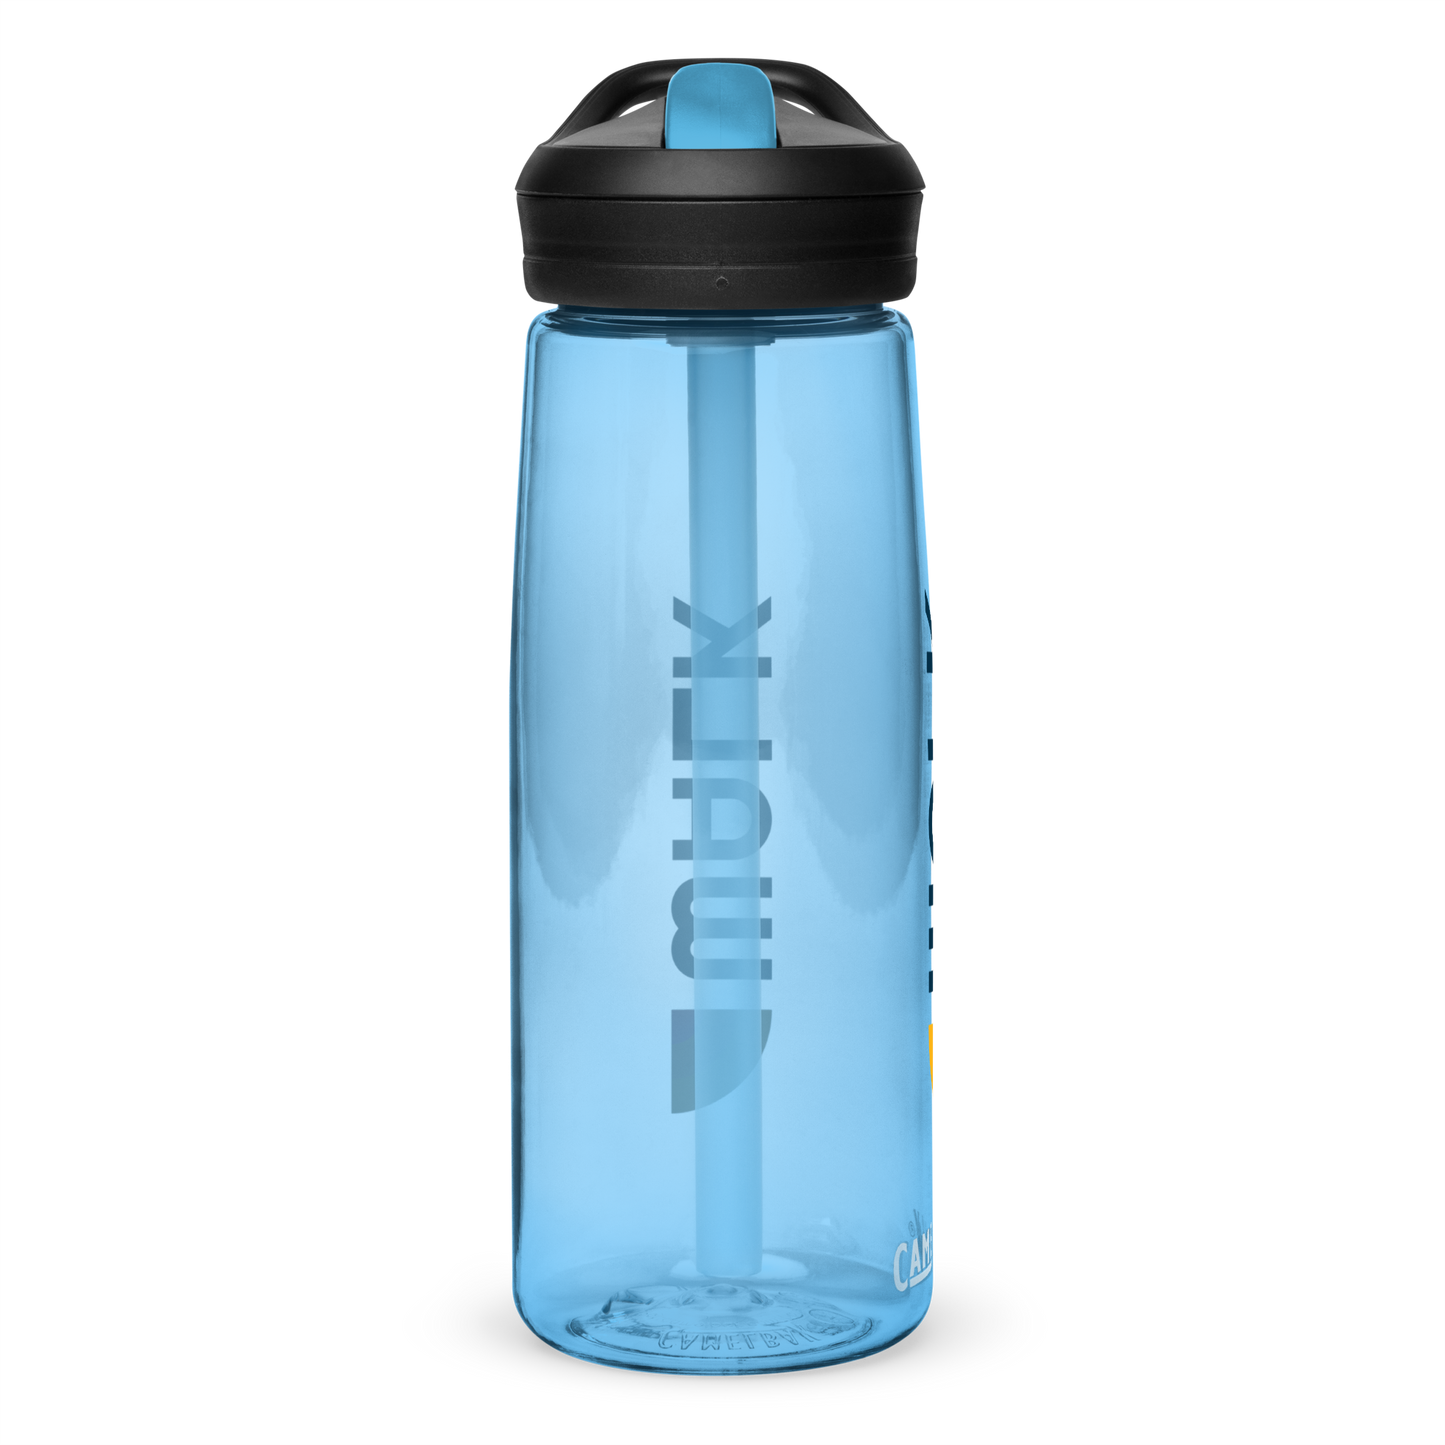 CamelBak Water Bottle